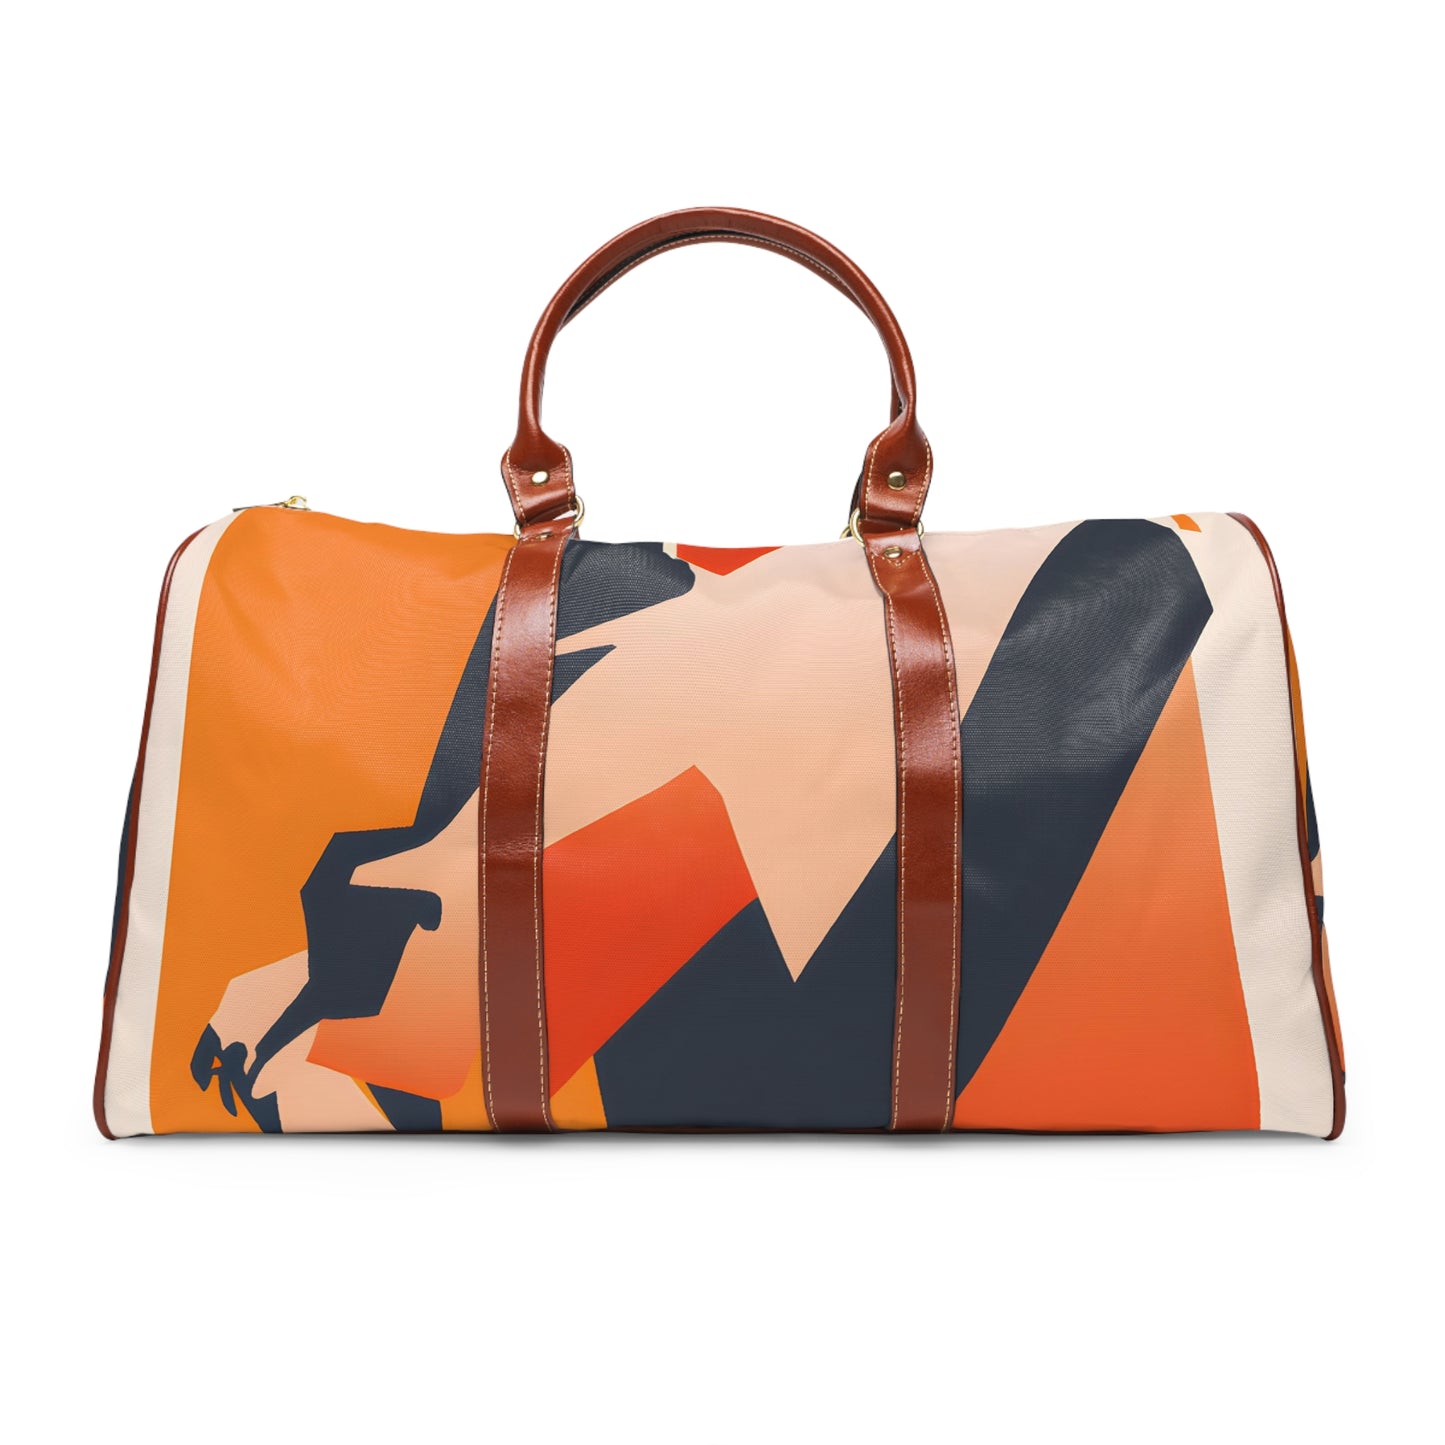 Gestura Ivy - Water-resistant Travel Bag